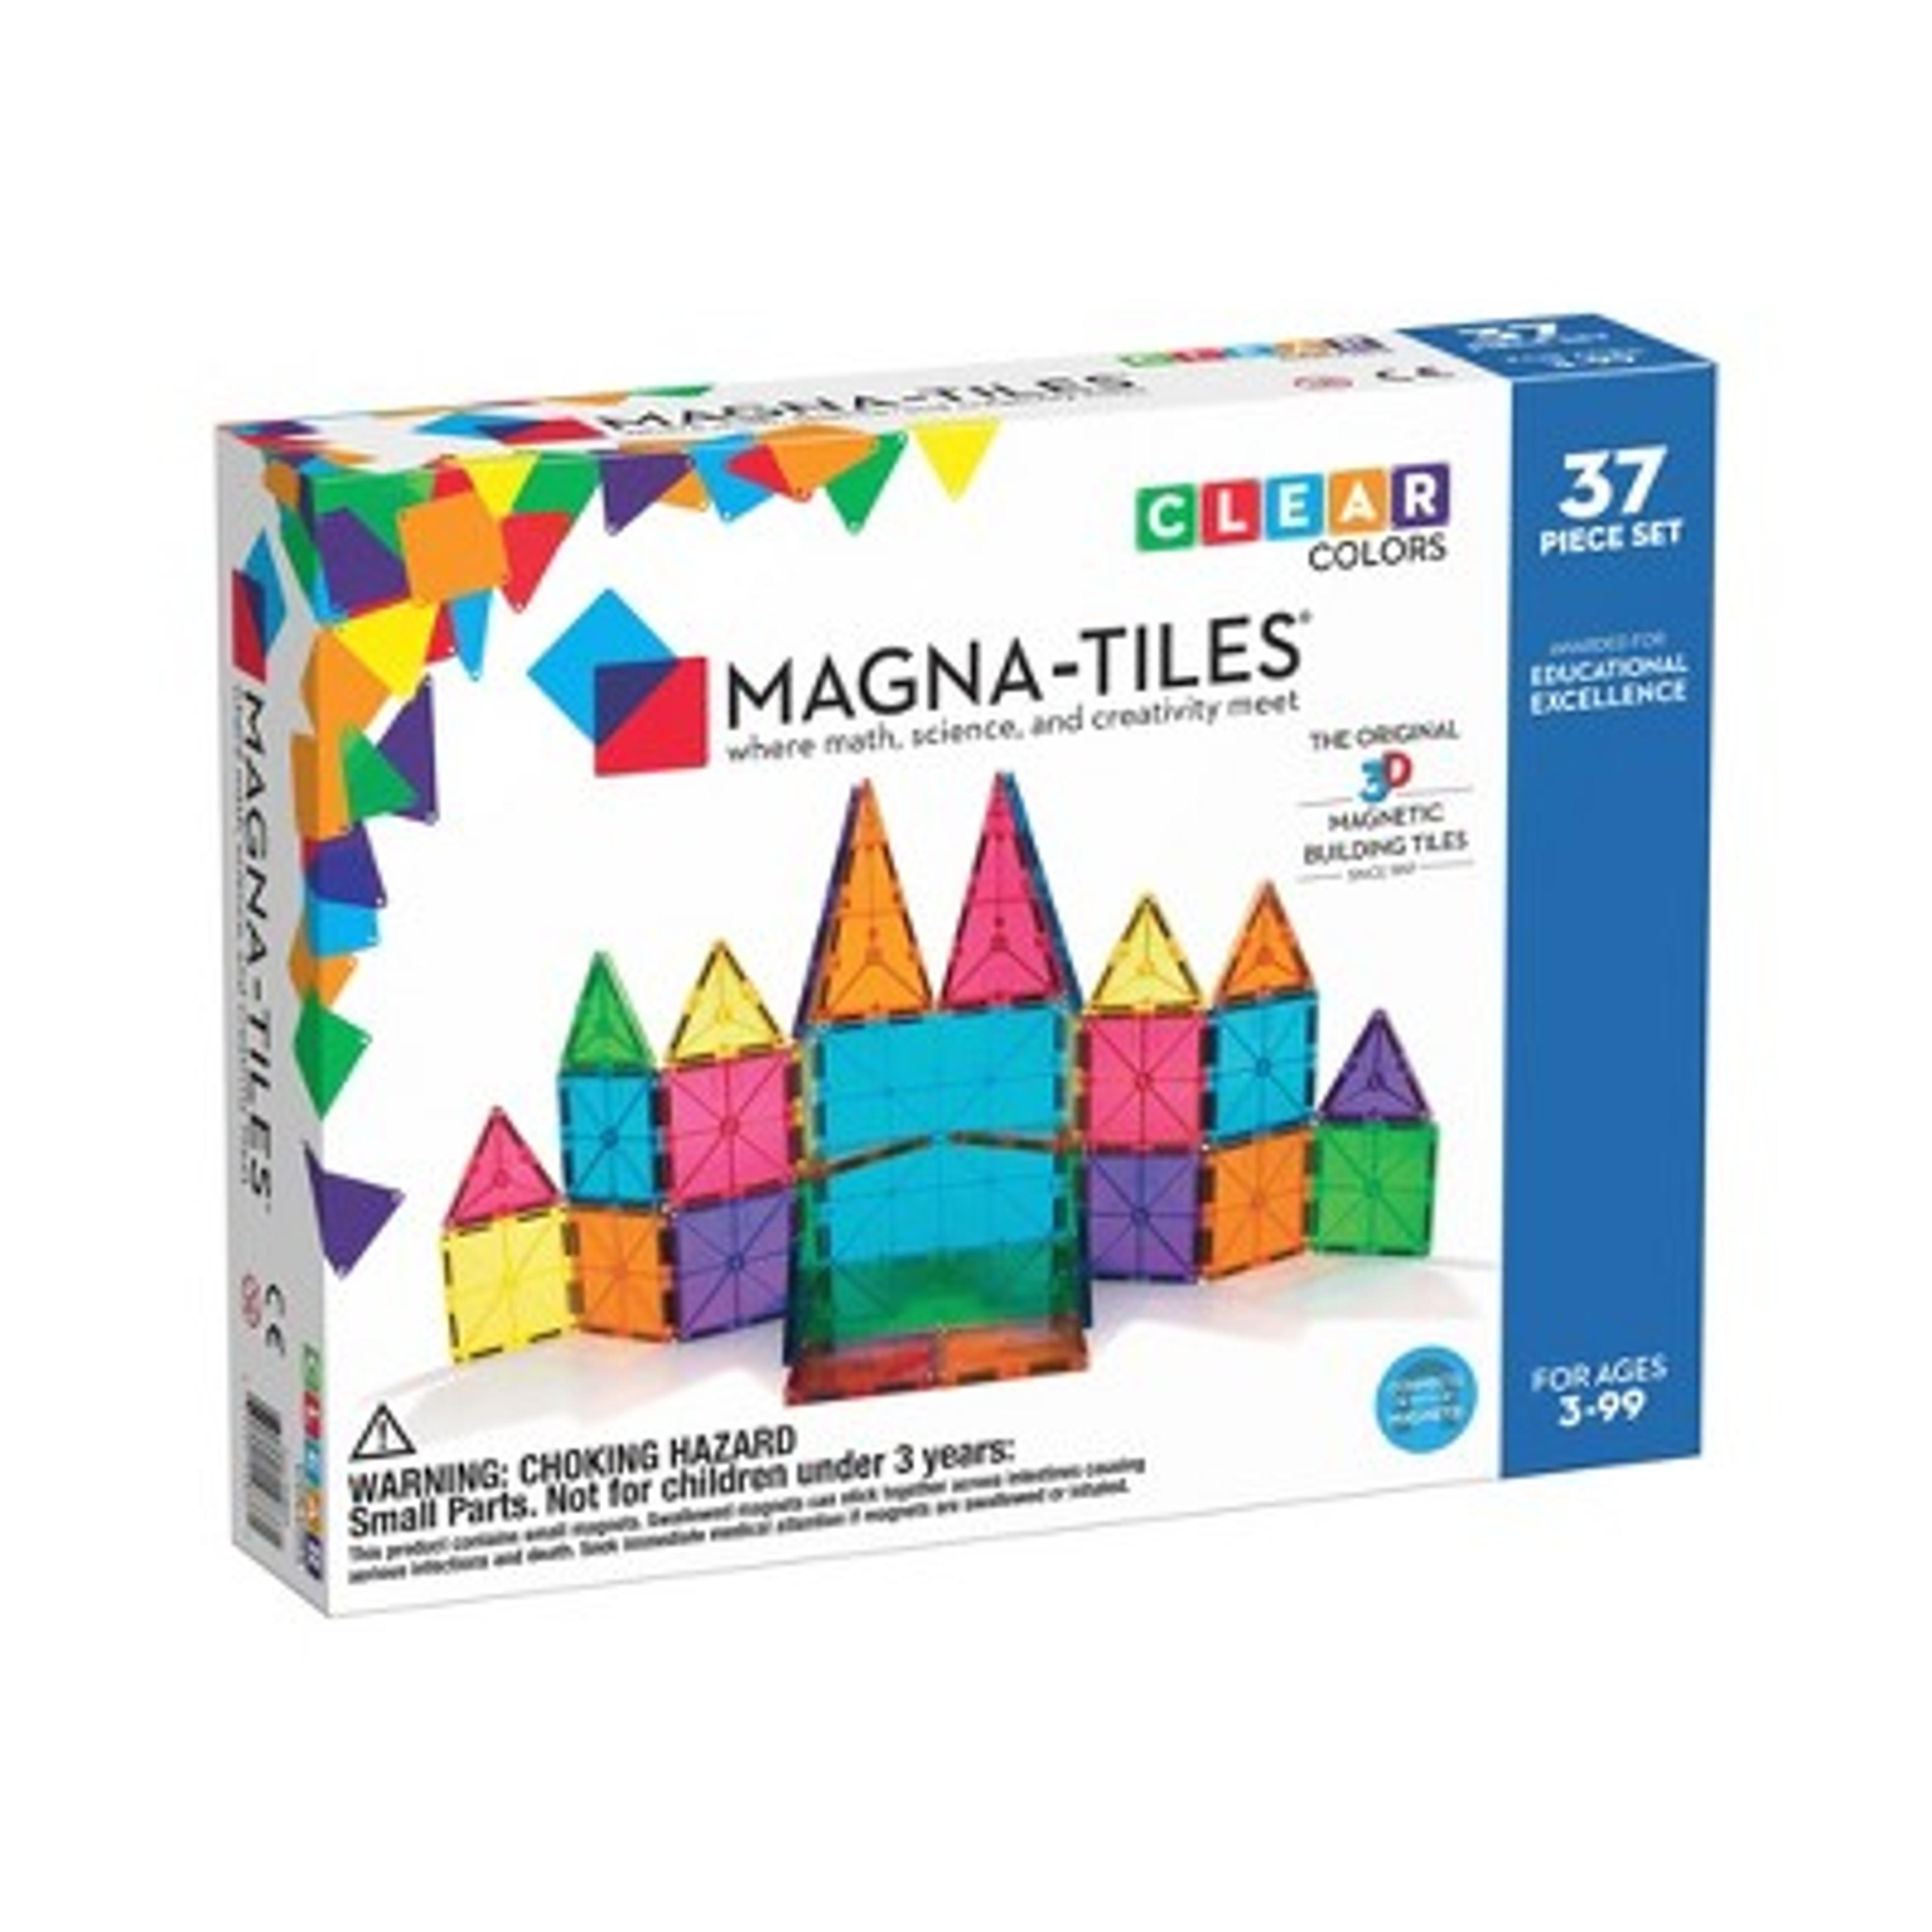 MAGNA-TILES Clear Colors 37pc Set